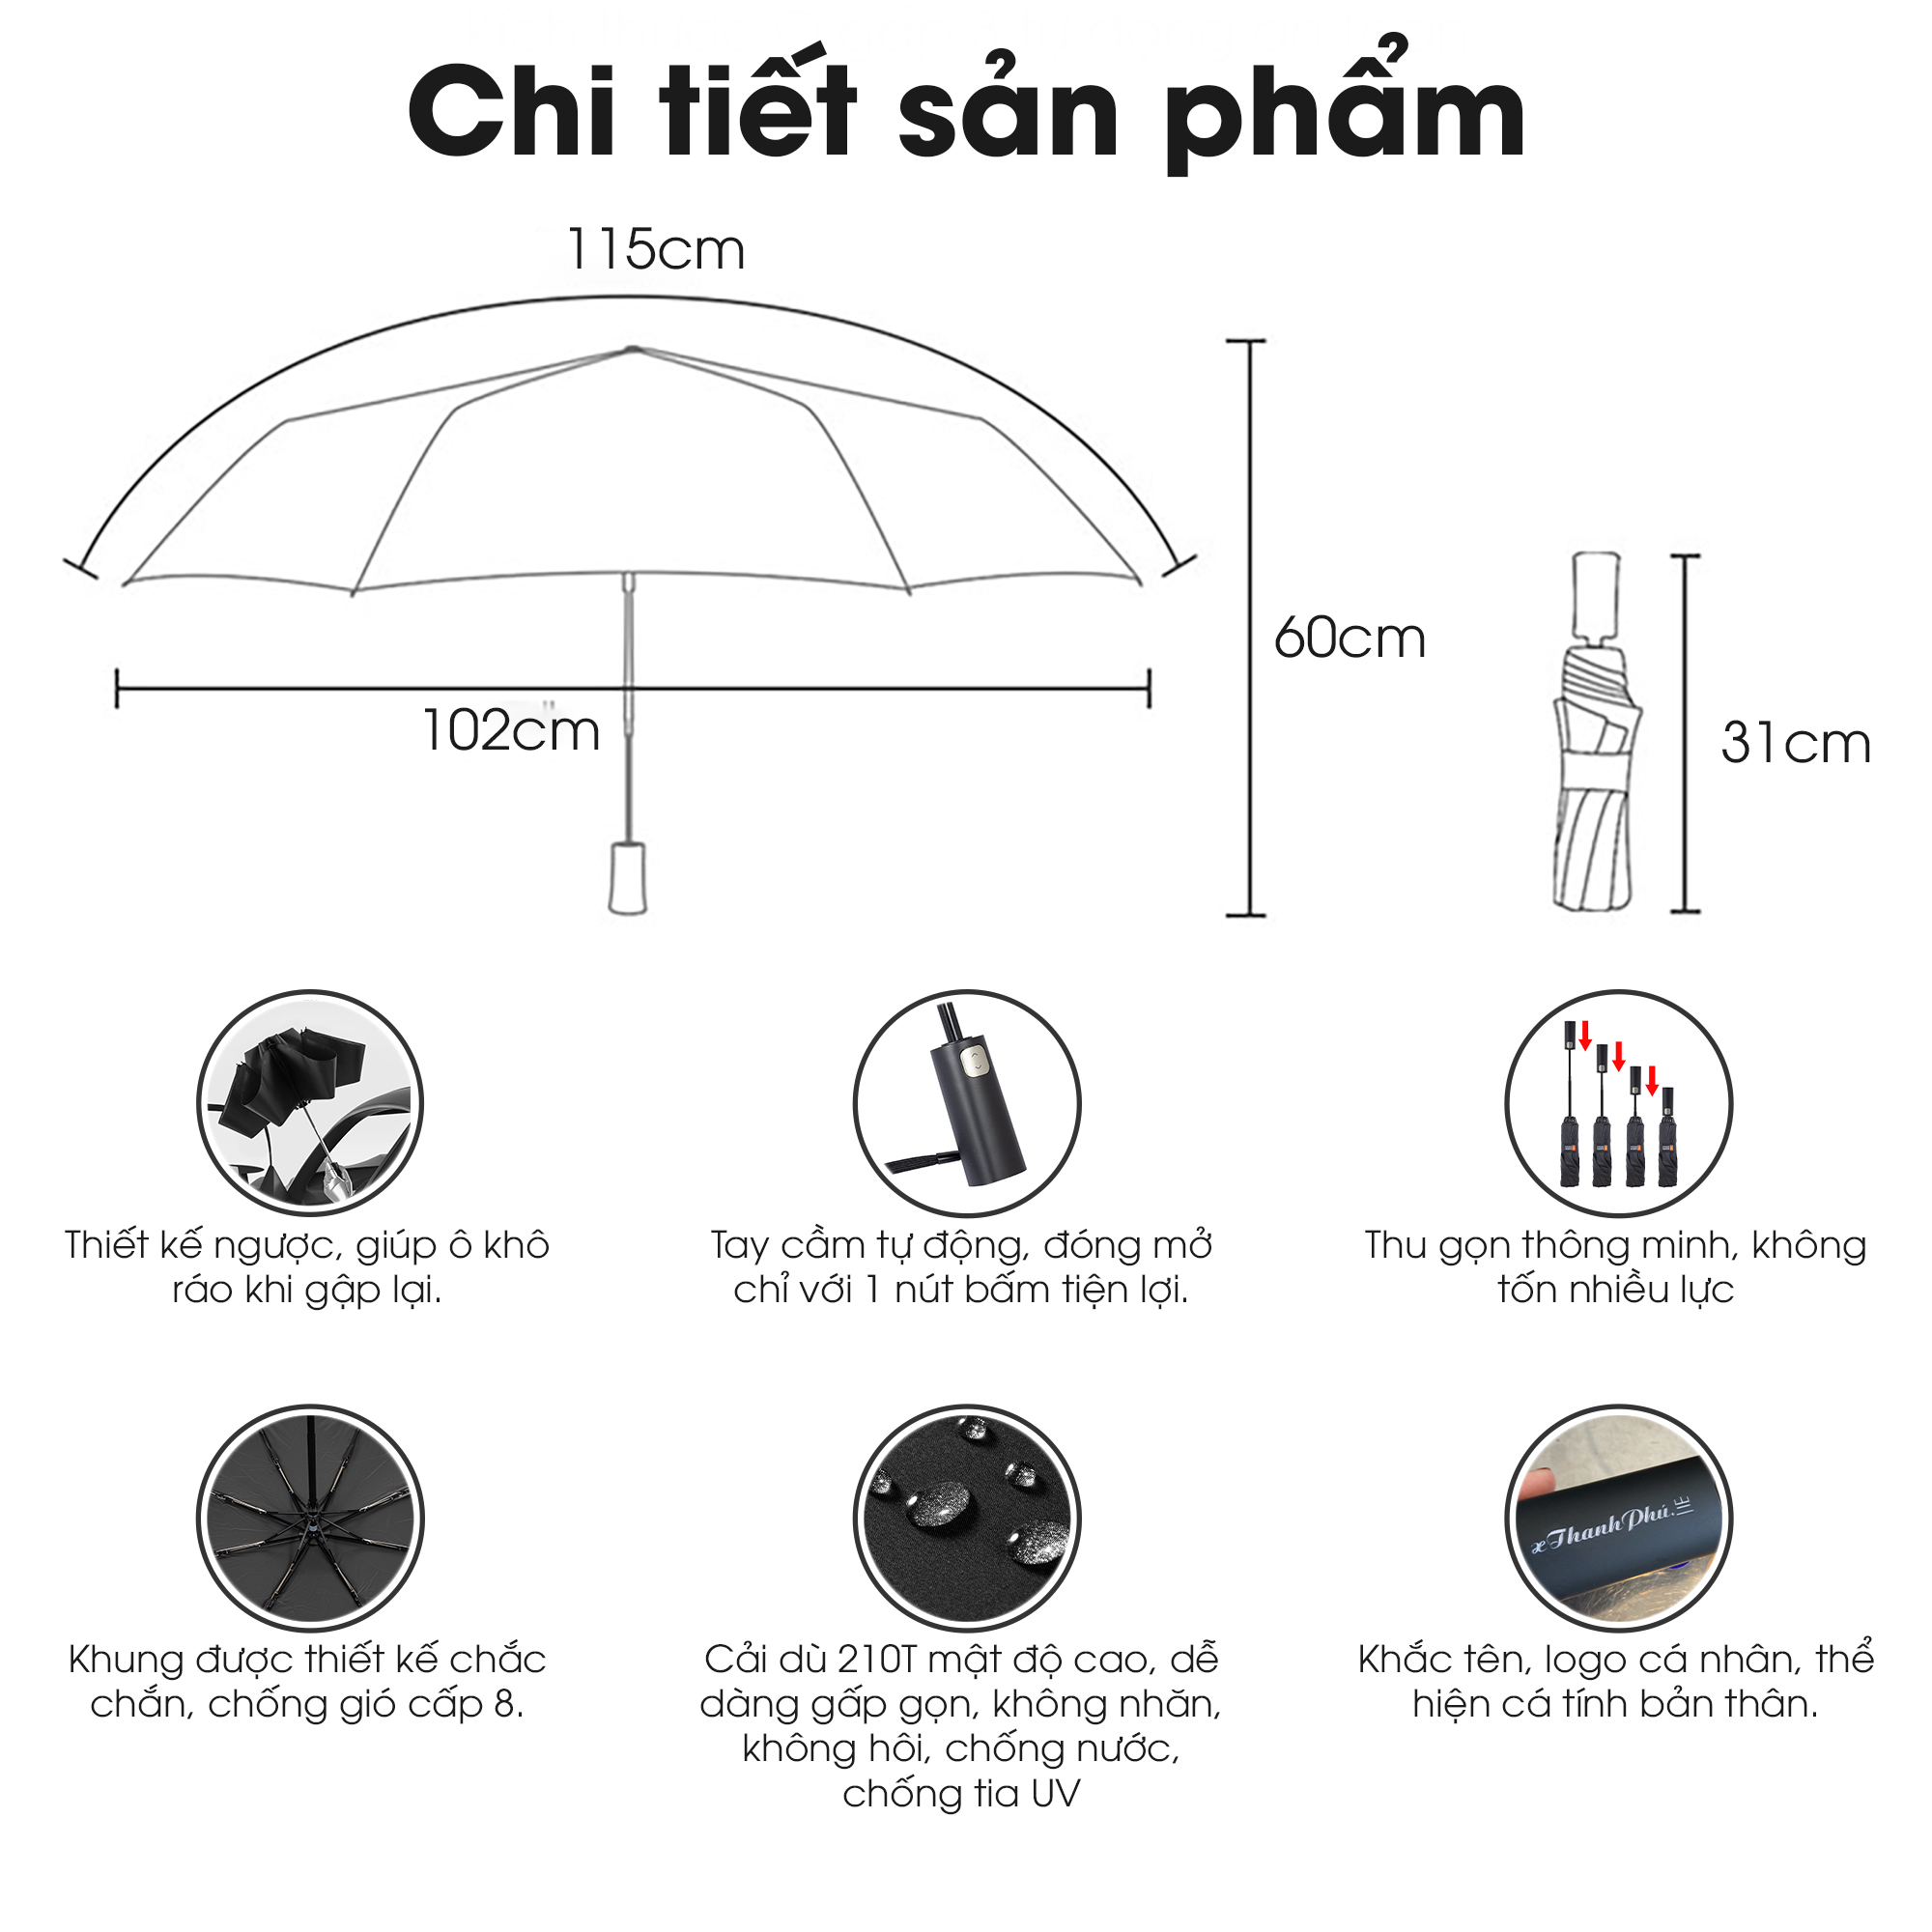 Ô dù tự động thông minh cao cấp toàn Fully Automatic Safe Umbrella, cơ chế giữ nước như dù ngược, khung nan chắc chắn chống gió bão cấp 6, vải siêu chống nước phủ Nano chống tia UV